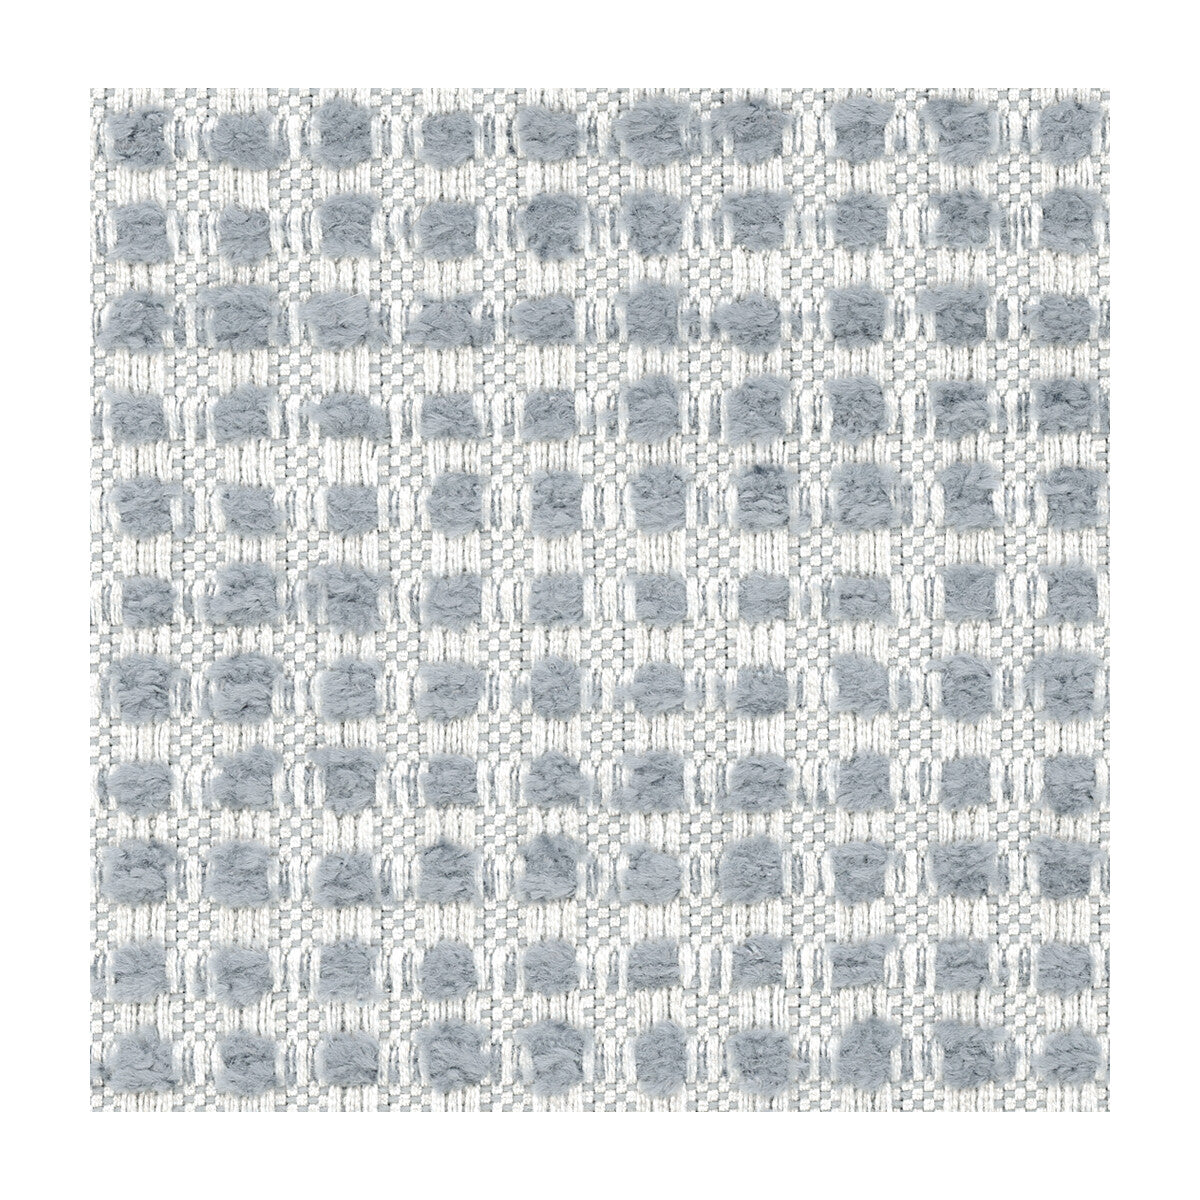 Kravet Design fabric in 31028-1611 color - pattern 31028.1611.0 - by Kravet Design